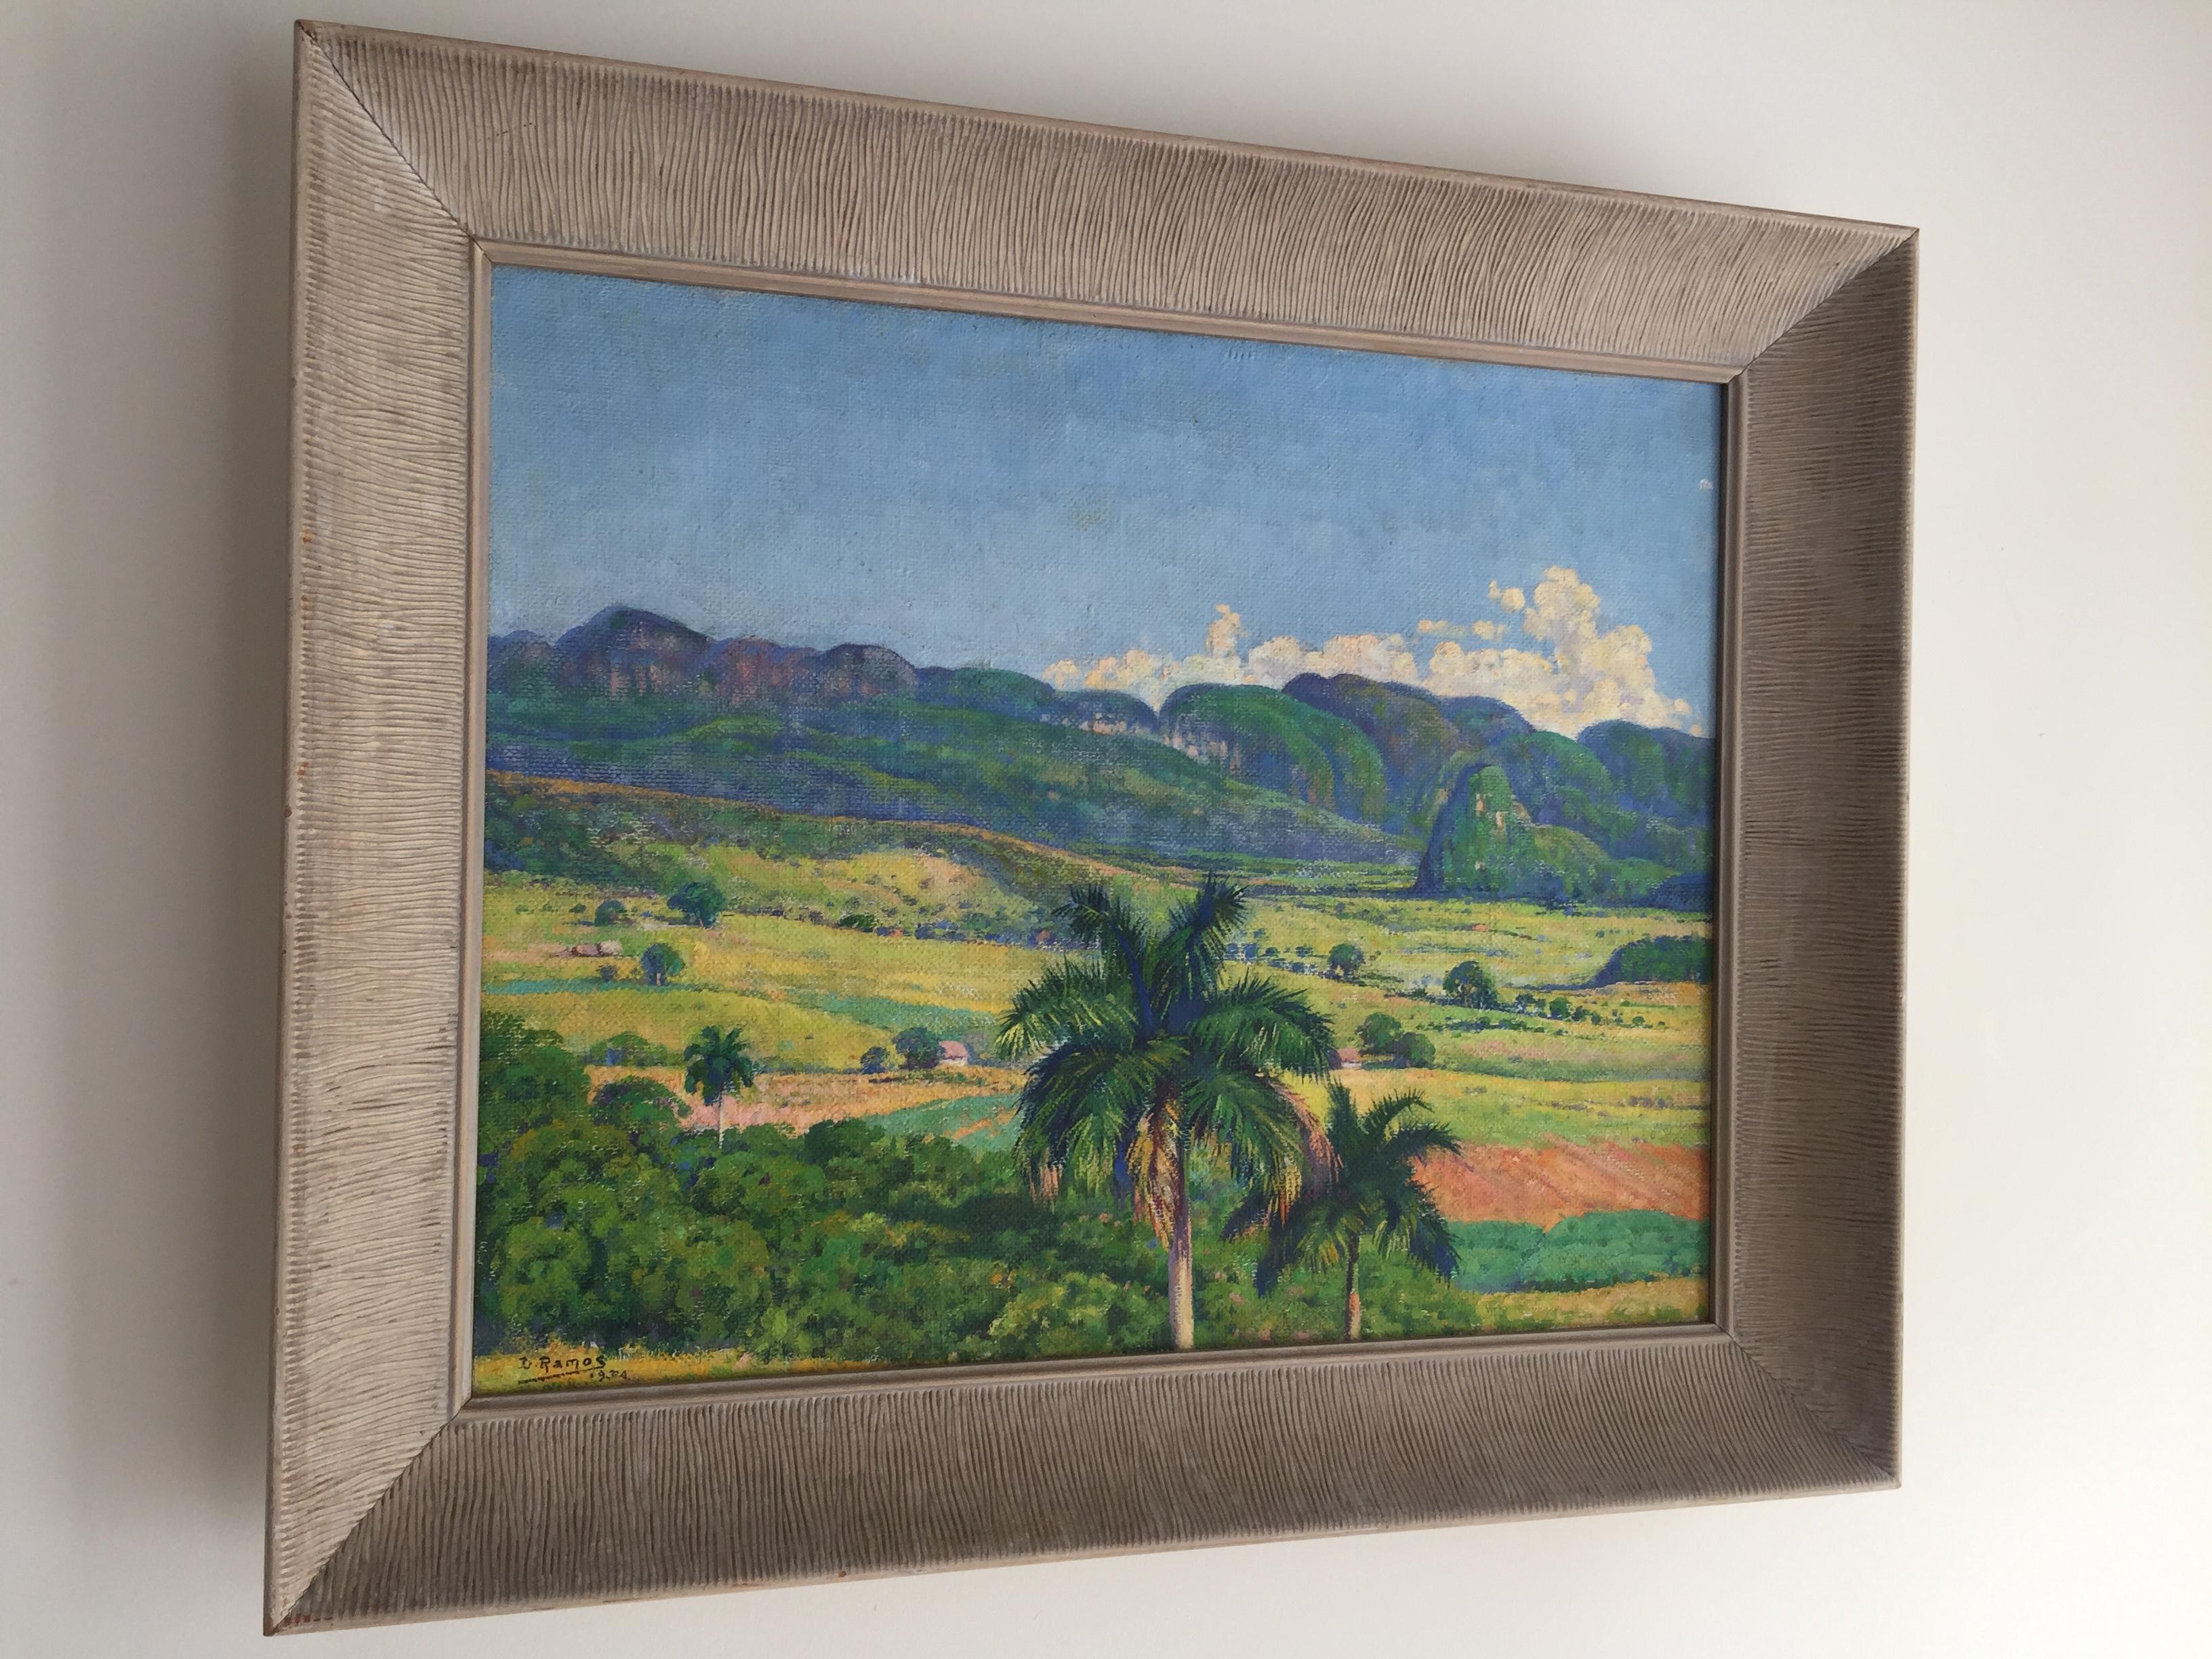 Domingo Ramos (1897-1967) paisaje Cubano peinture à l'huile sur toile de jute.
Encadré dans son cadre original en bois Art Déco... 
Signé par l'artiste, D. Ramos 1934, sur le devant en bas à gauche. 
La peinture mesure 20